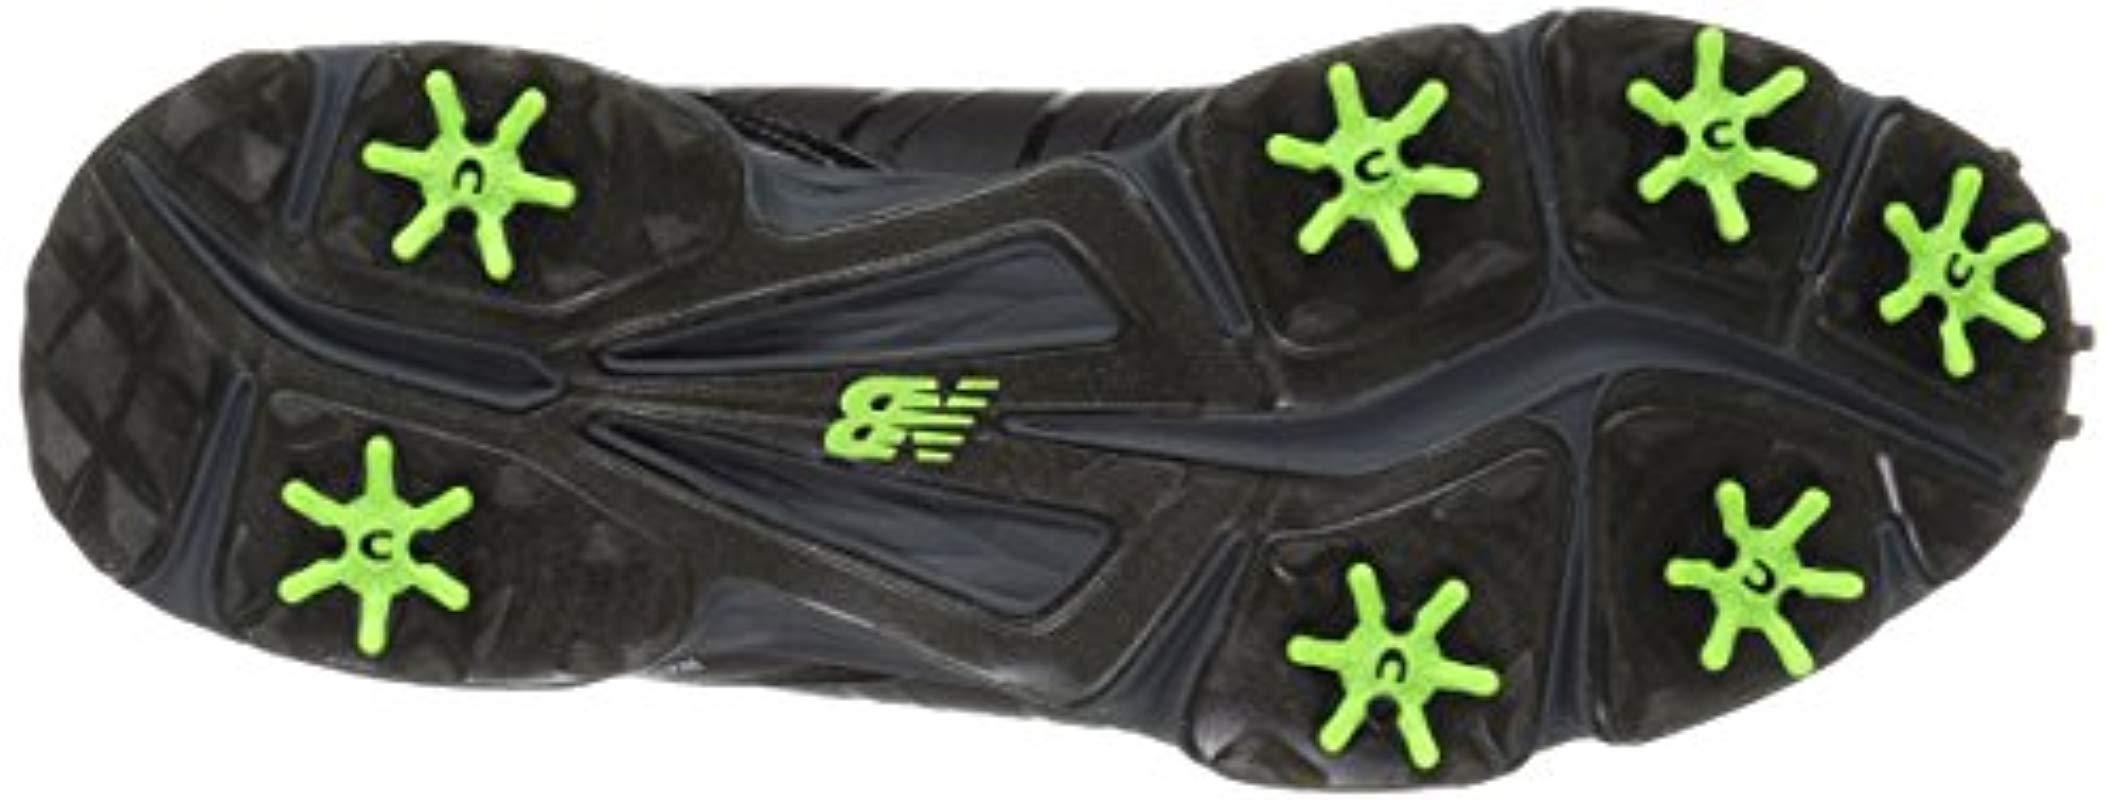 new balance men's nbg24 waterproof spiked comfort golf shoe